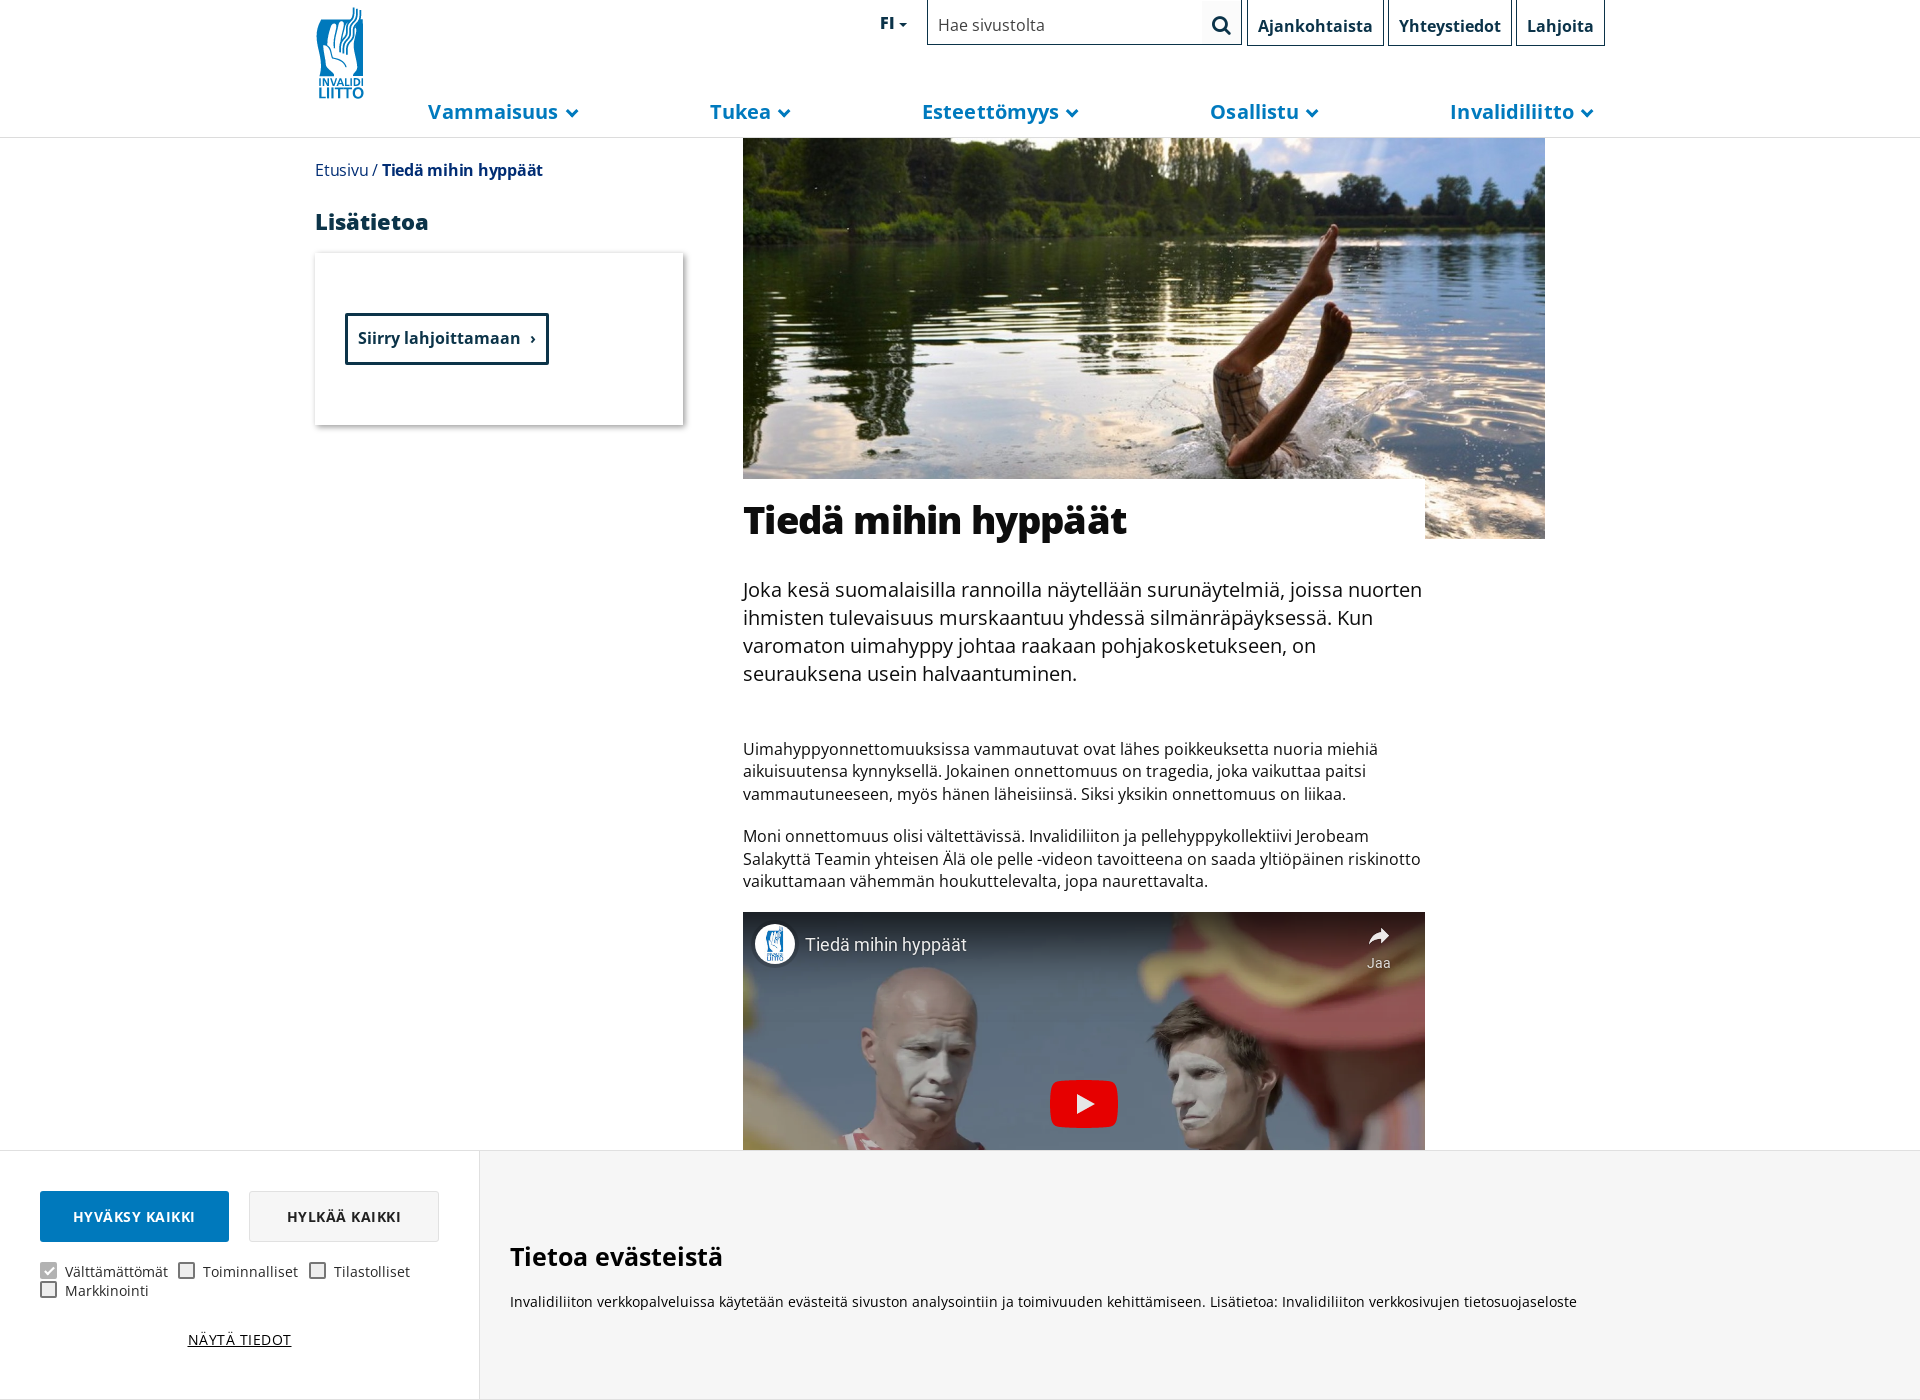 Skärmdump för tiedamihinhyppaat.fi